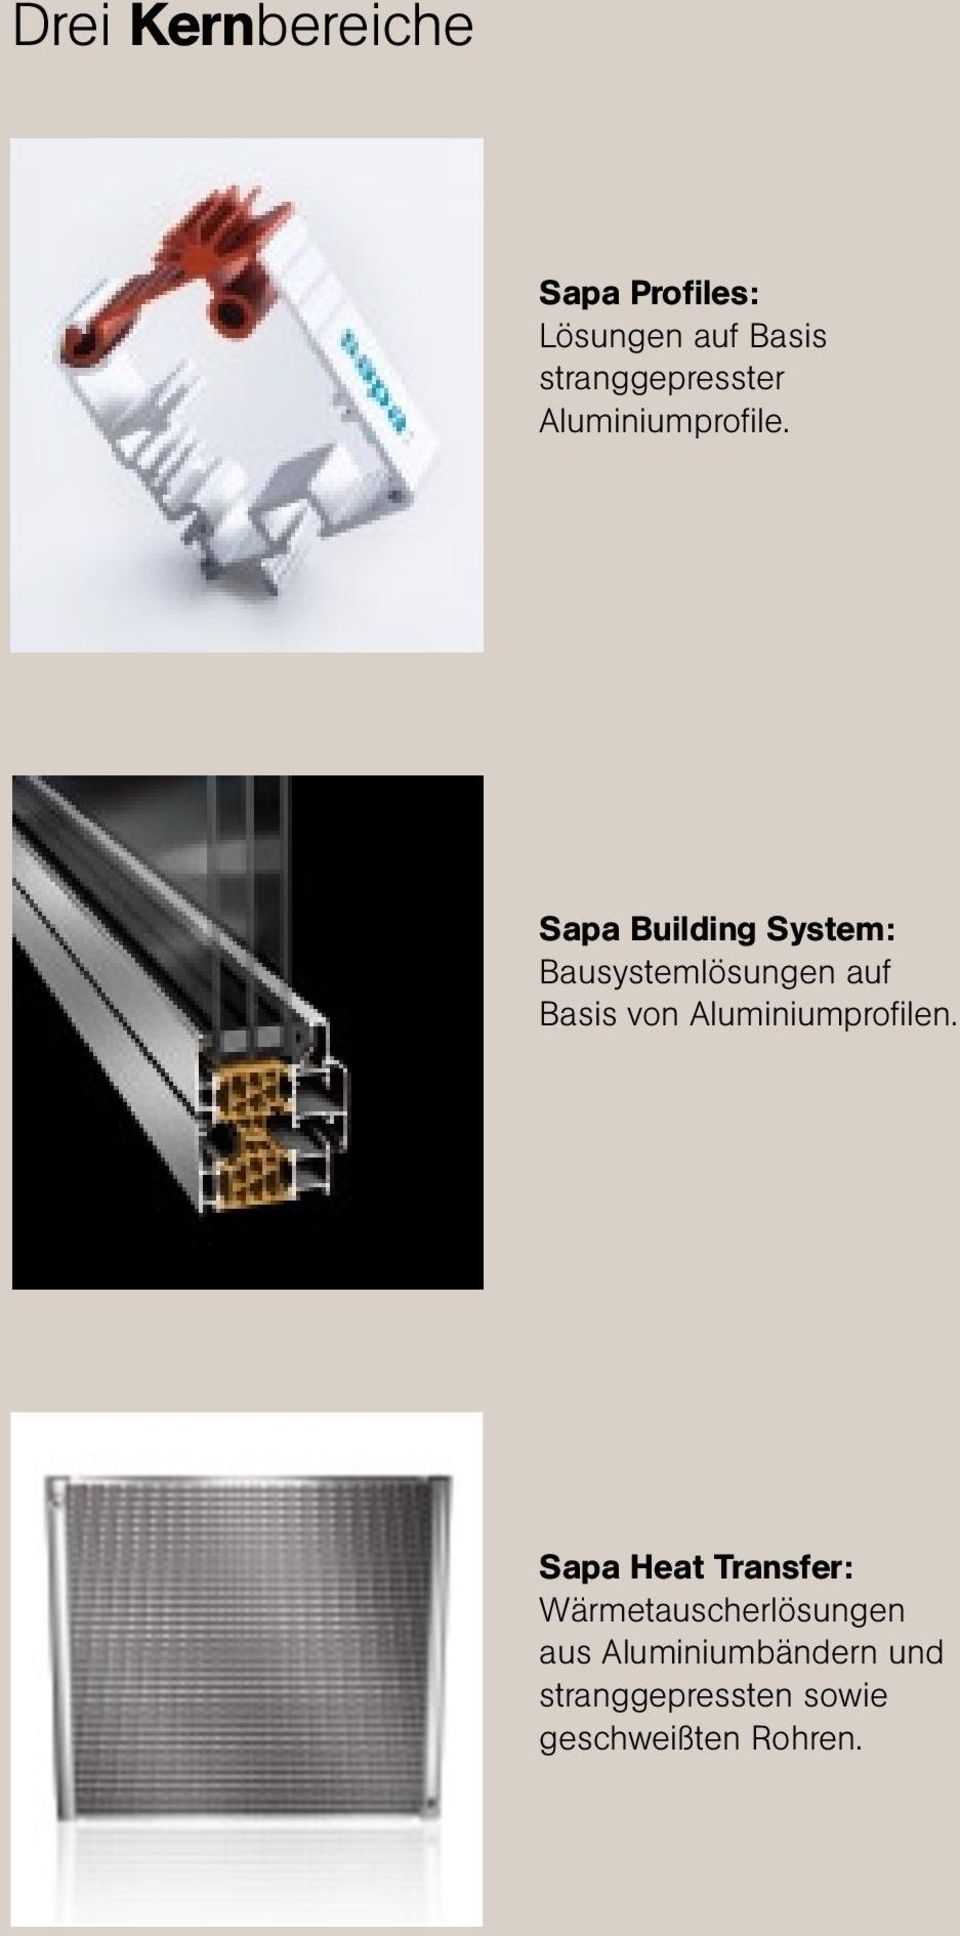 Sapa Building System: Bausystemlösungen auf Basis von